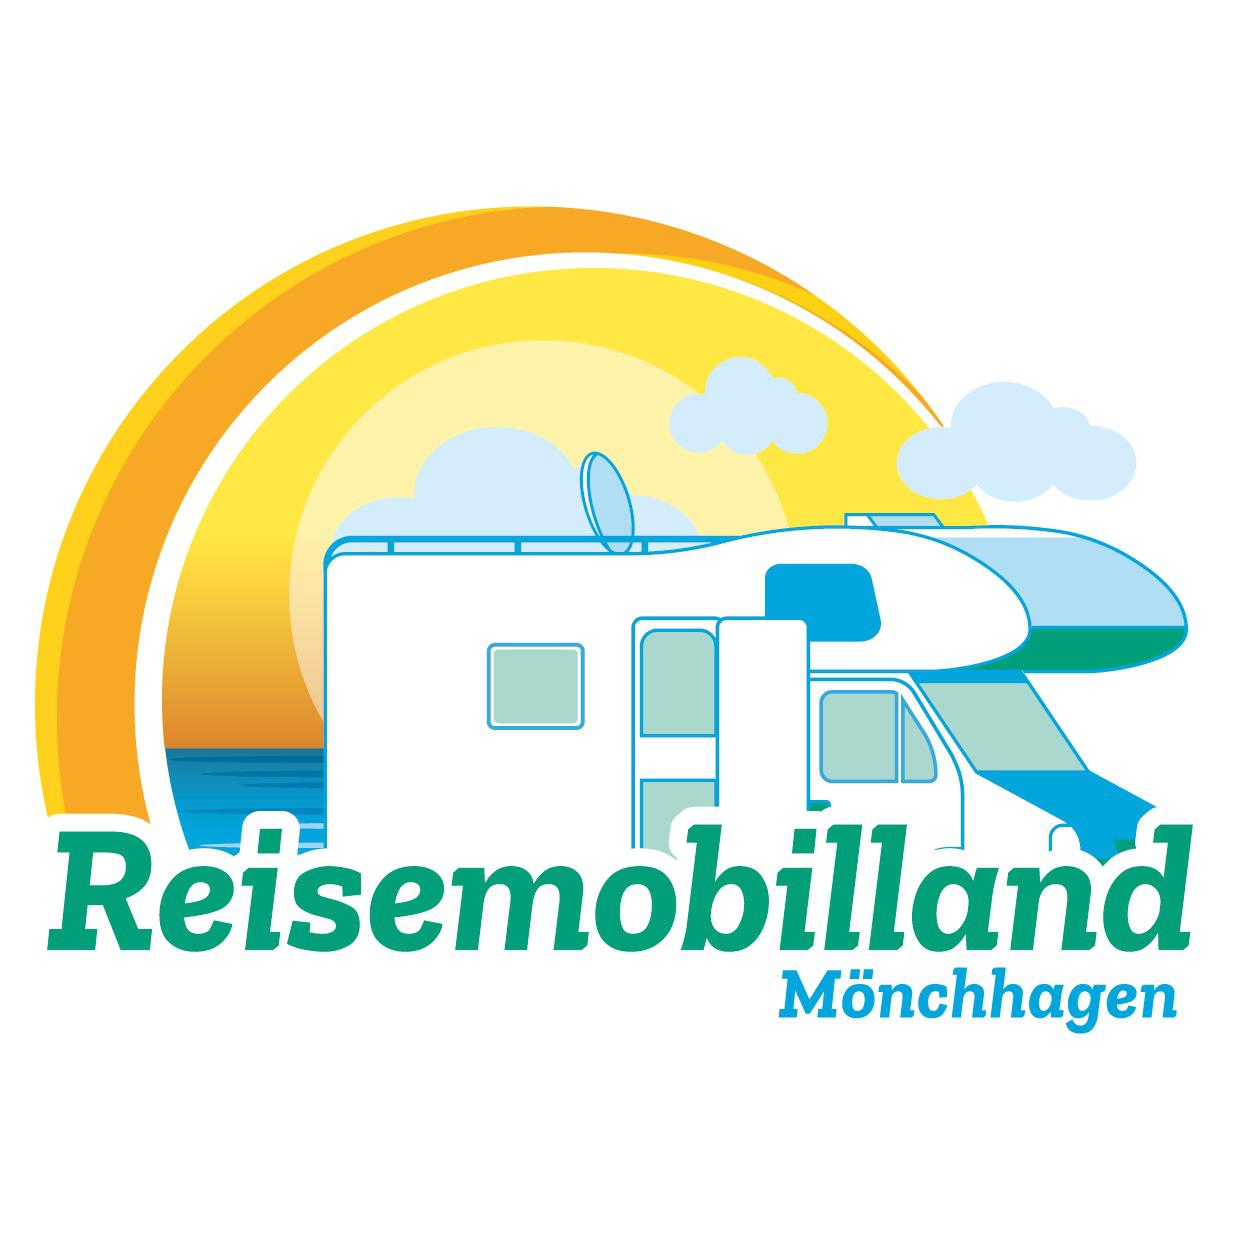 Reisemobilland Mönchhagen Inh. Lars Riemer Logo